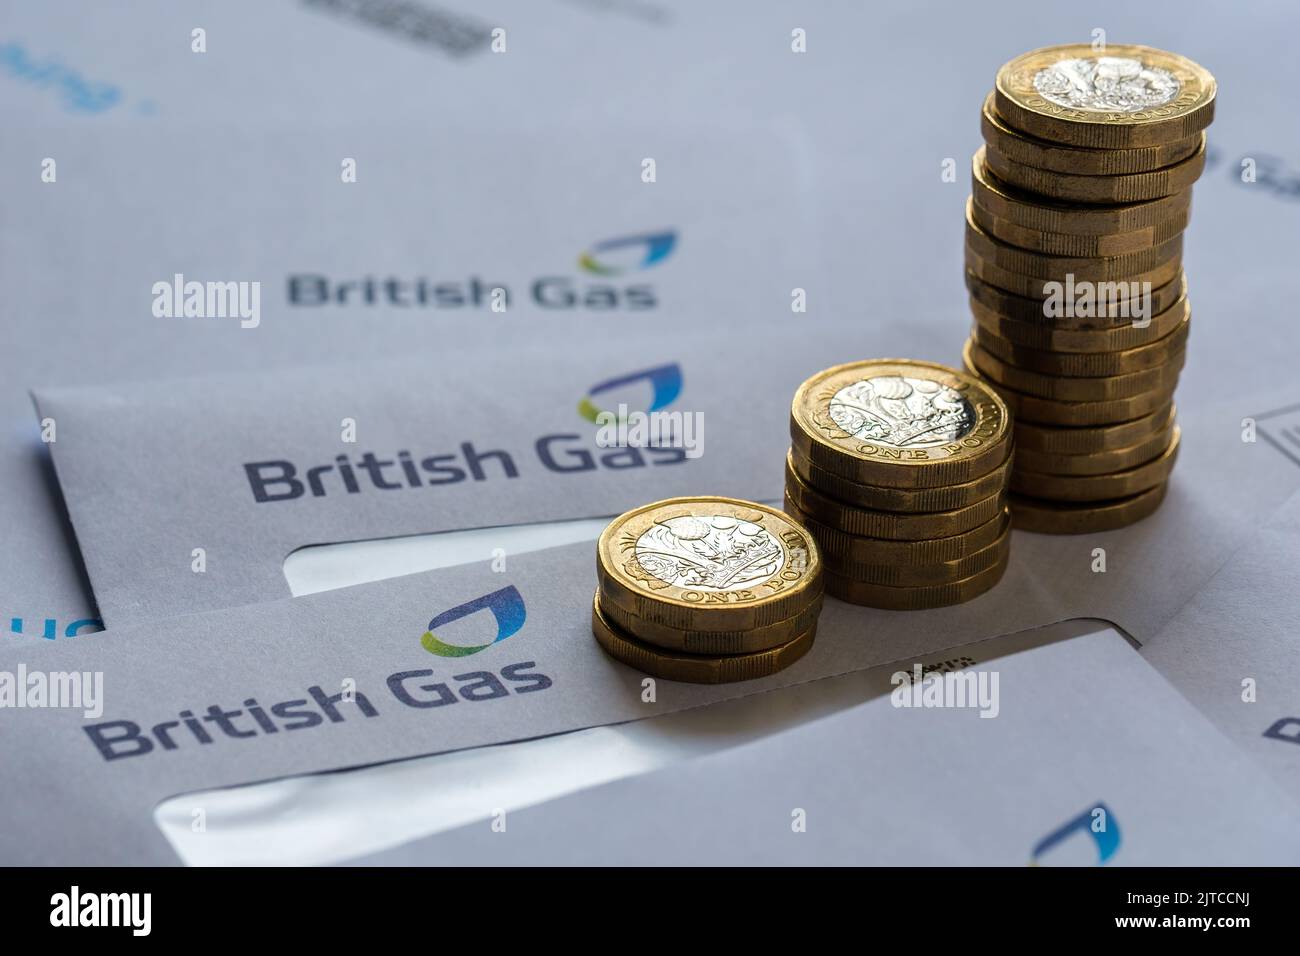 Stapel von 1-Pfund-Münzen auf den britischen Gasrechnungen in den Umschlägen. Konzept für Energiekrise und steigende Gaspreise in Großbritannien. Stafford, Großbritannien, Augus Stockfoto